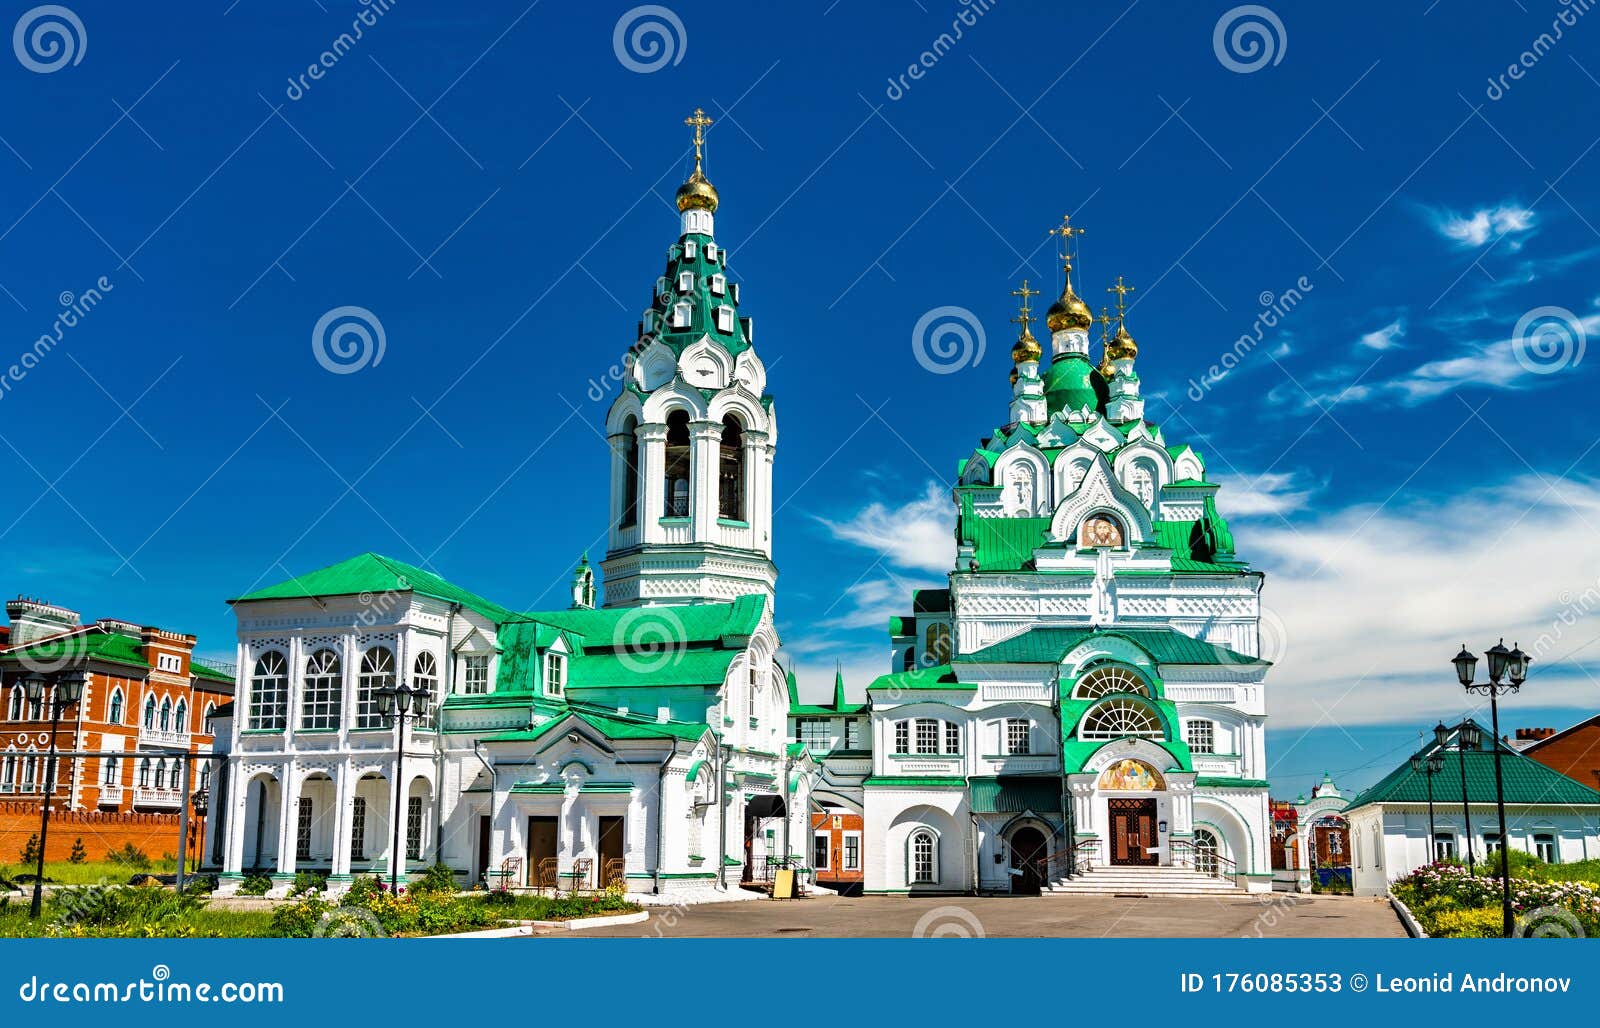 trinity church in yoshkar-ola, russia